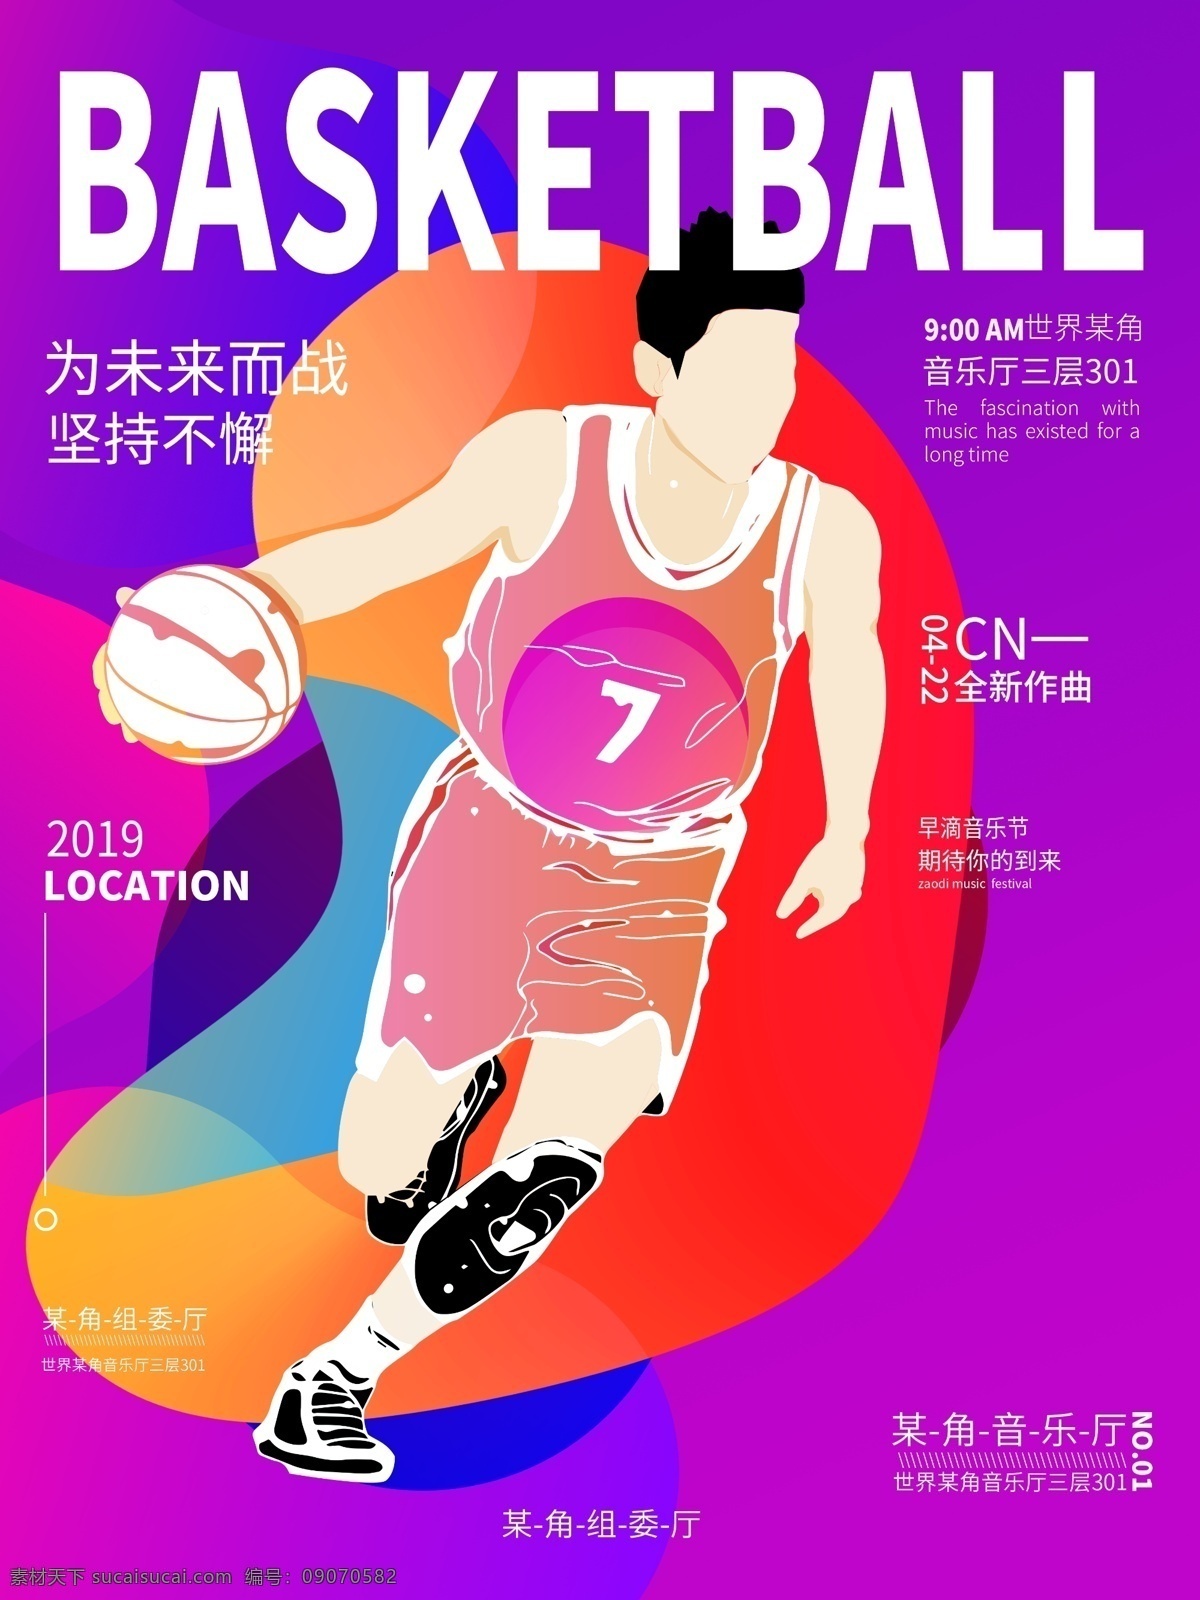 原创 插画 健身 运动 篮球 海报 男性 多彩叠加 紫色 蓝色 红色